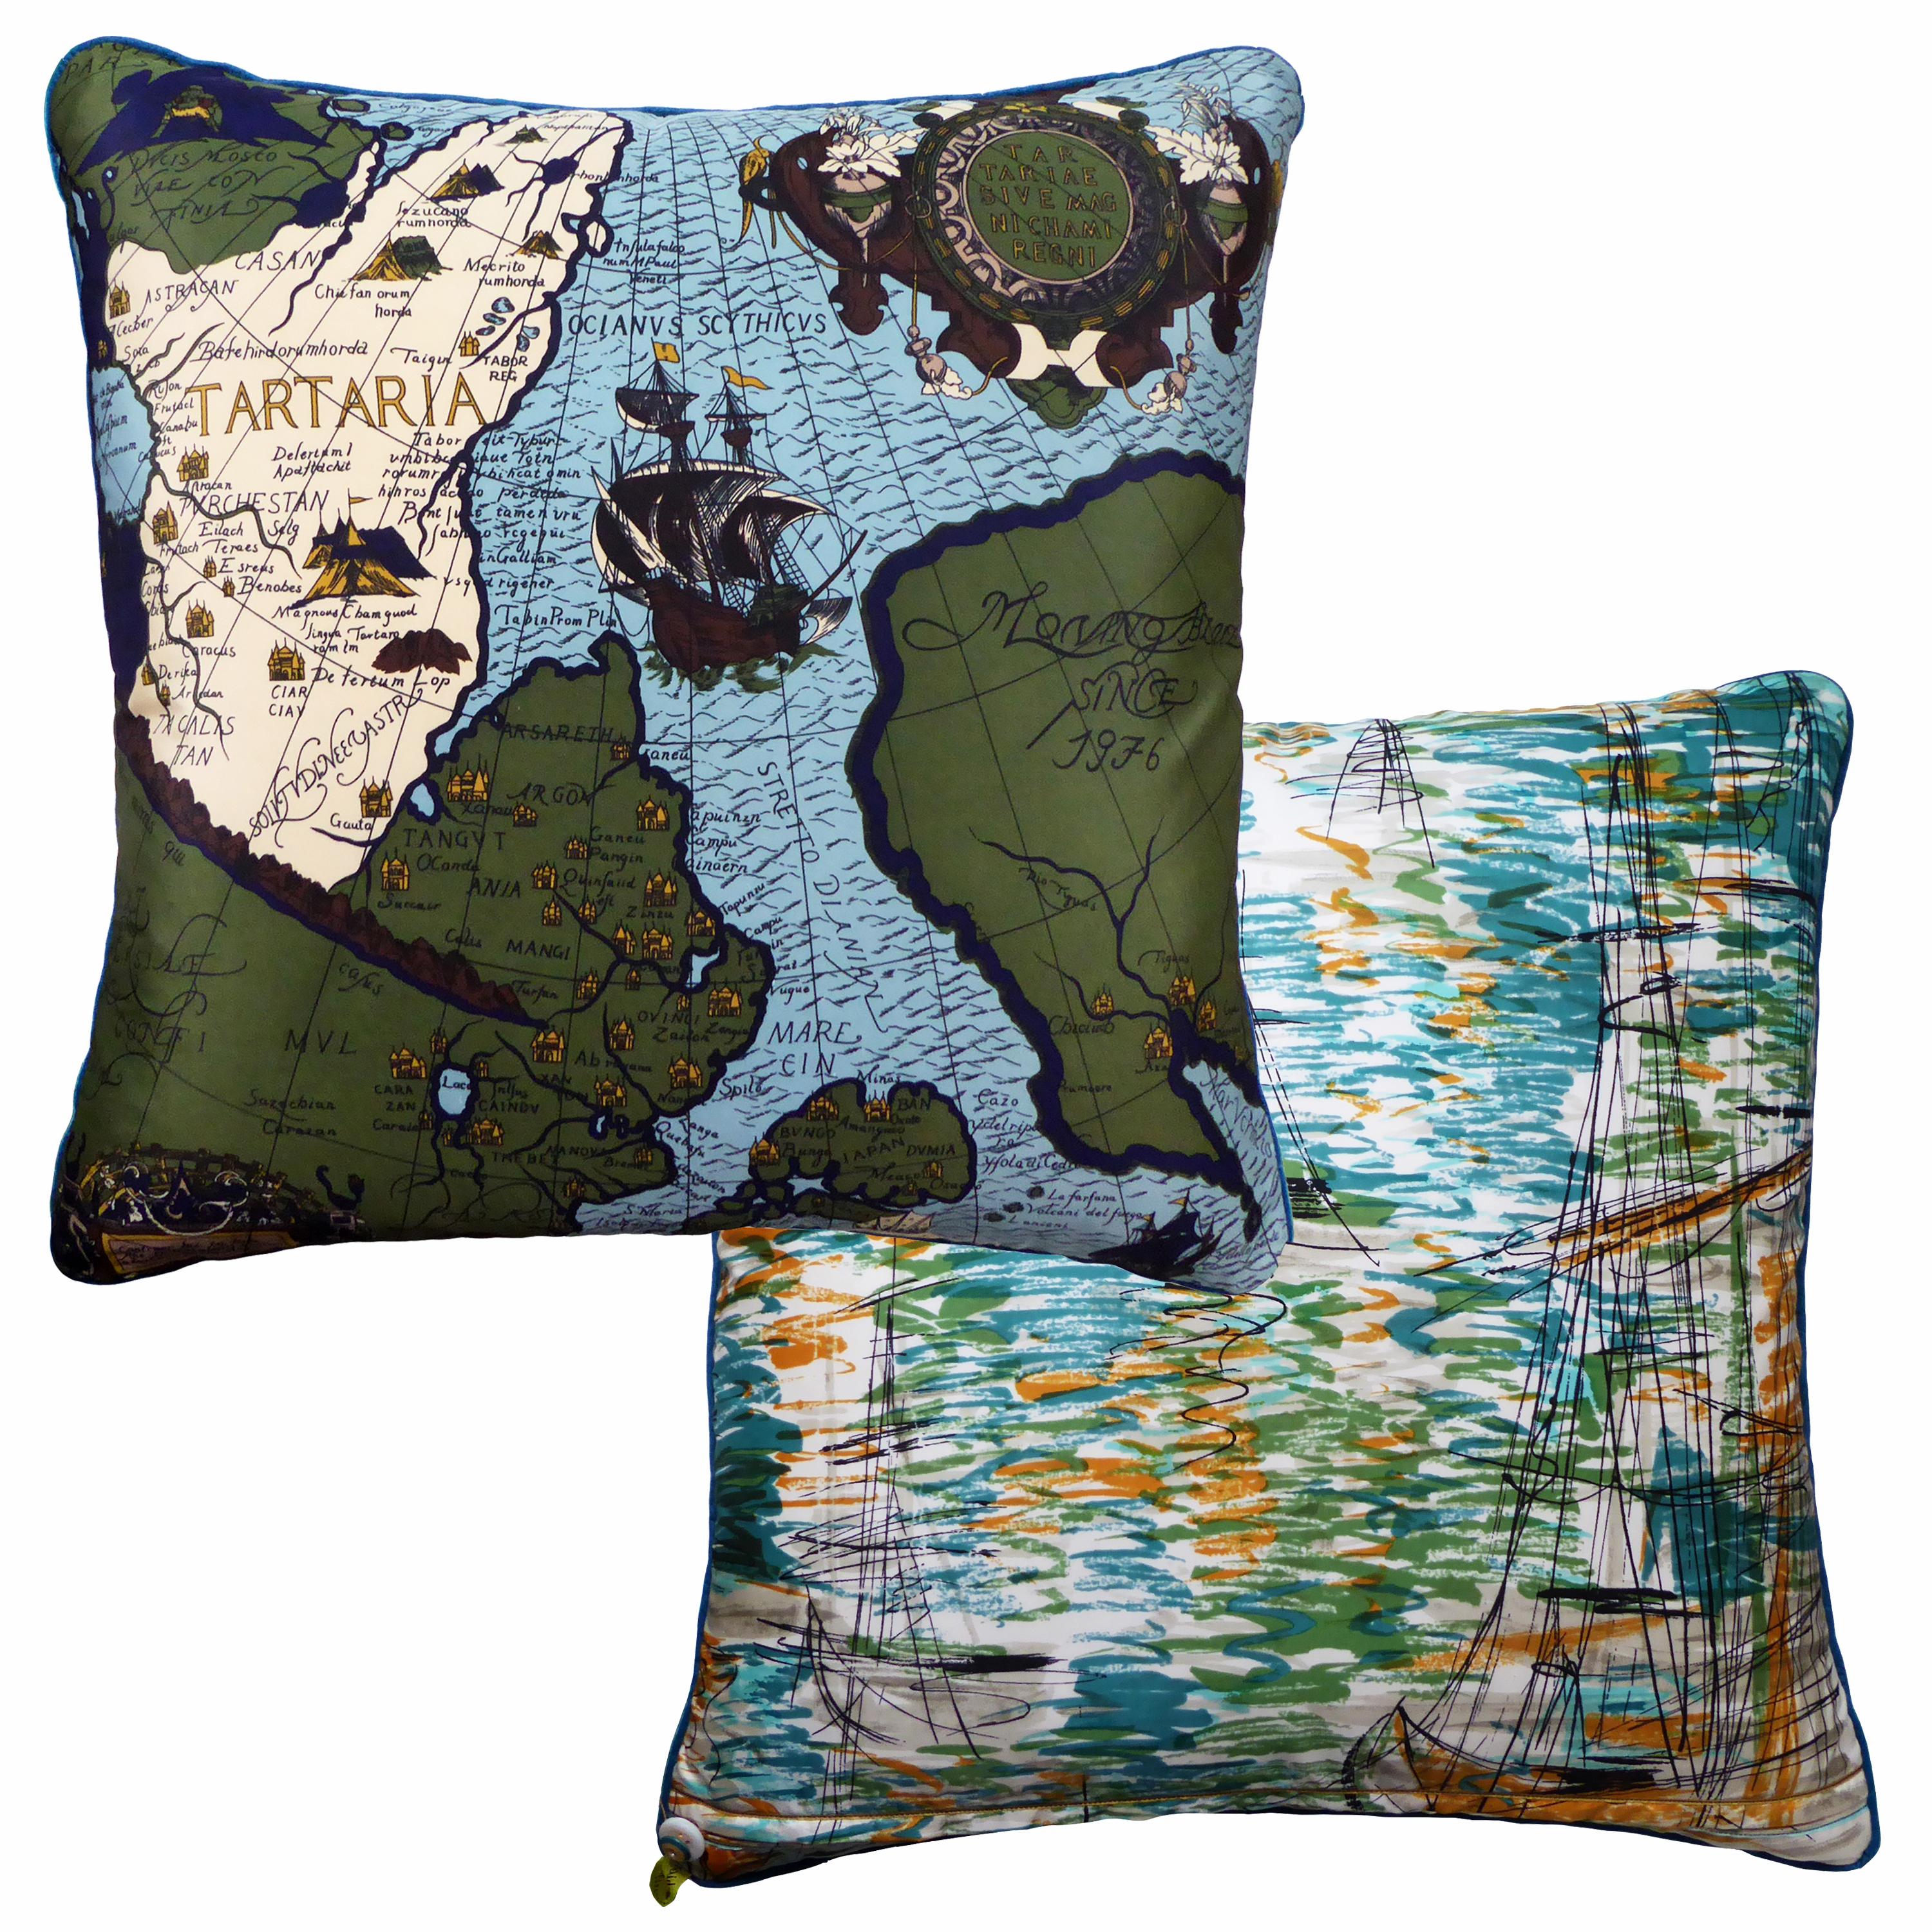 Organic Modern Vintage Cushions, British Bespoke Made Silk Pillow ‘Tartaria', Made in UK